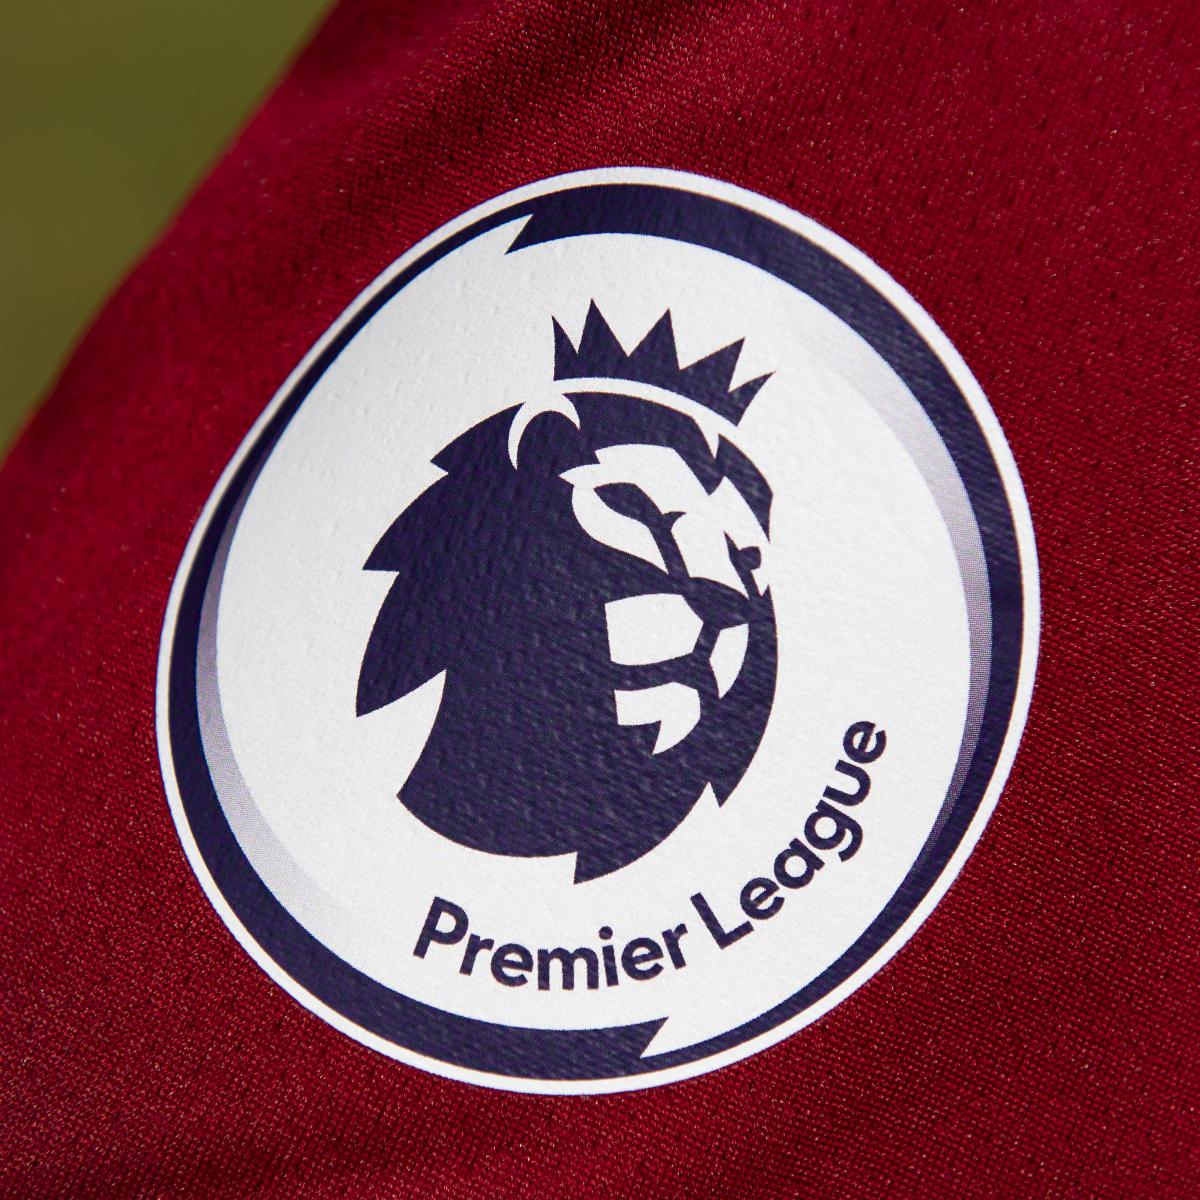 Premier League Announces 2 More Positive COVID-19 Tests After Round 2 ...